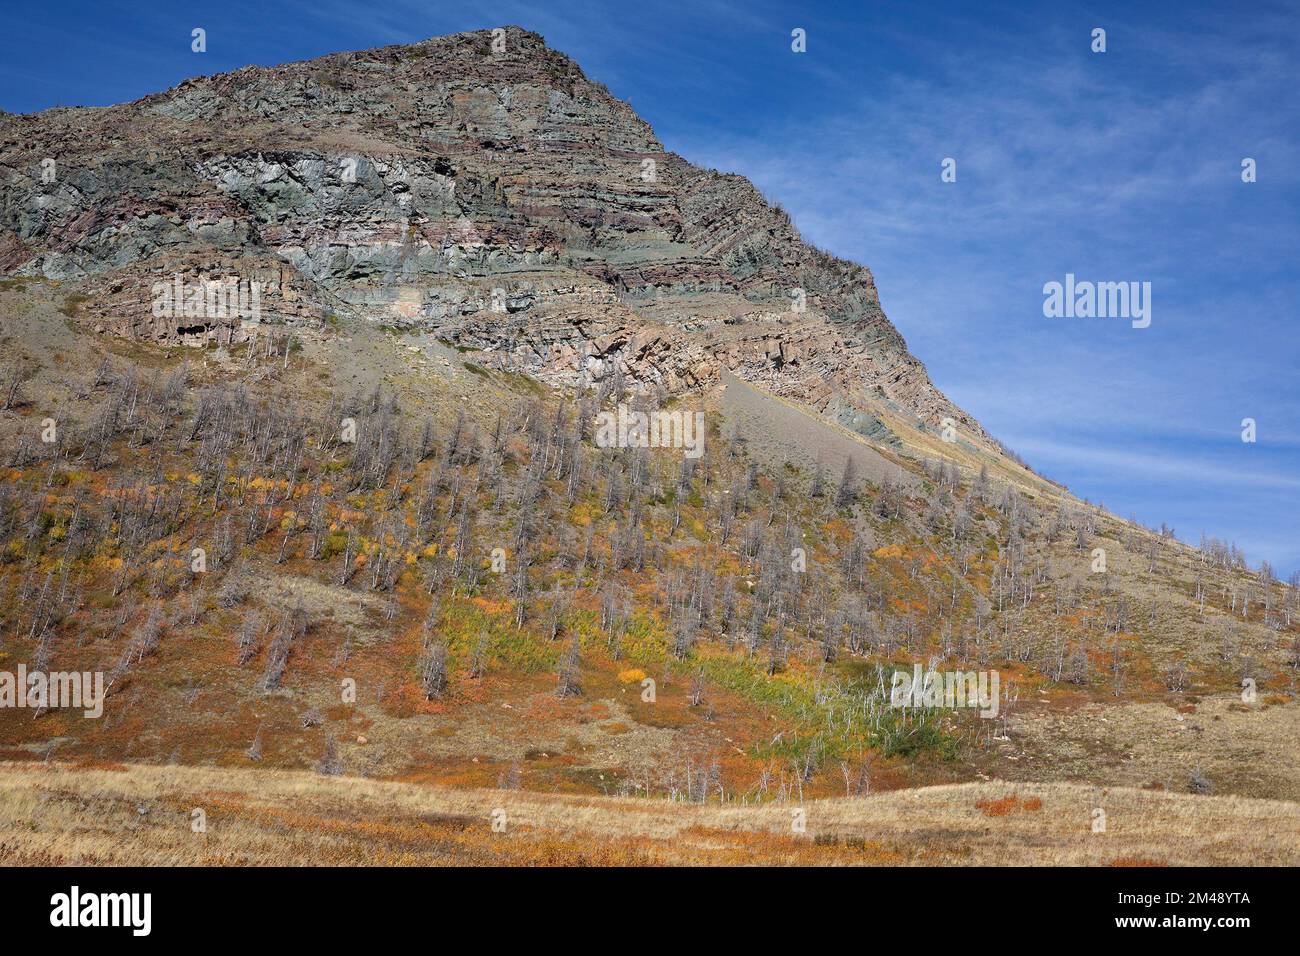 Argillite strati di roccia sedimentaria nelle antiche montagne di Waterton, Canada. Il colore rosso è di ferro ossidato e il verde di ferro non ossidato Foto Stock